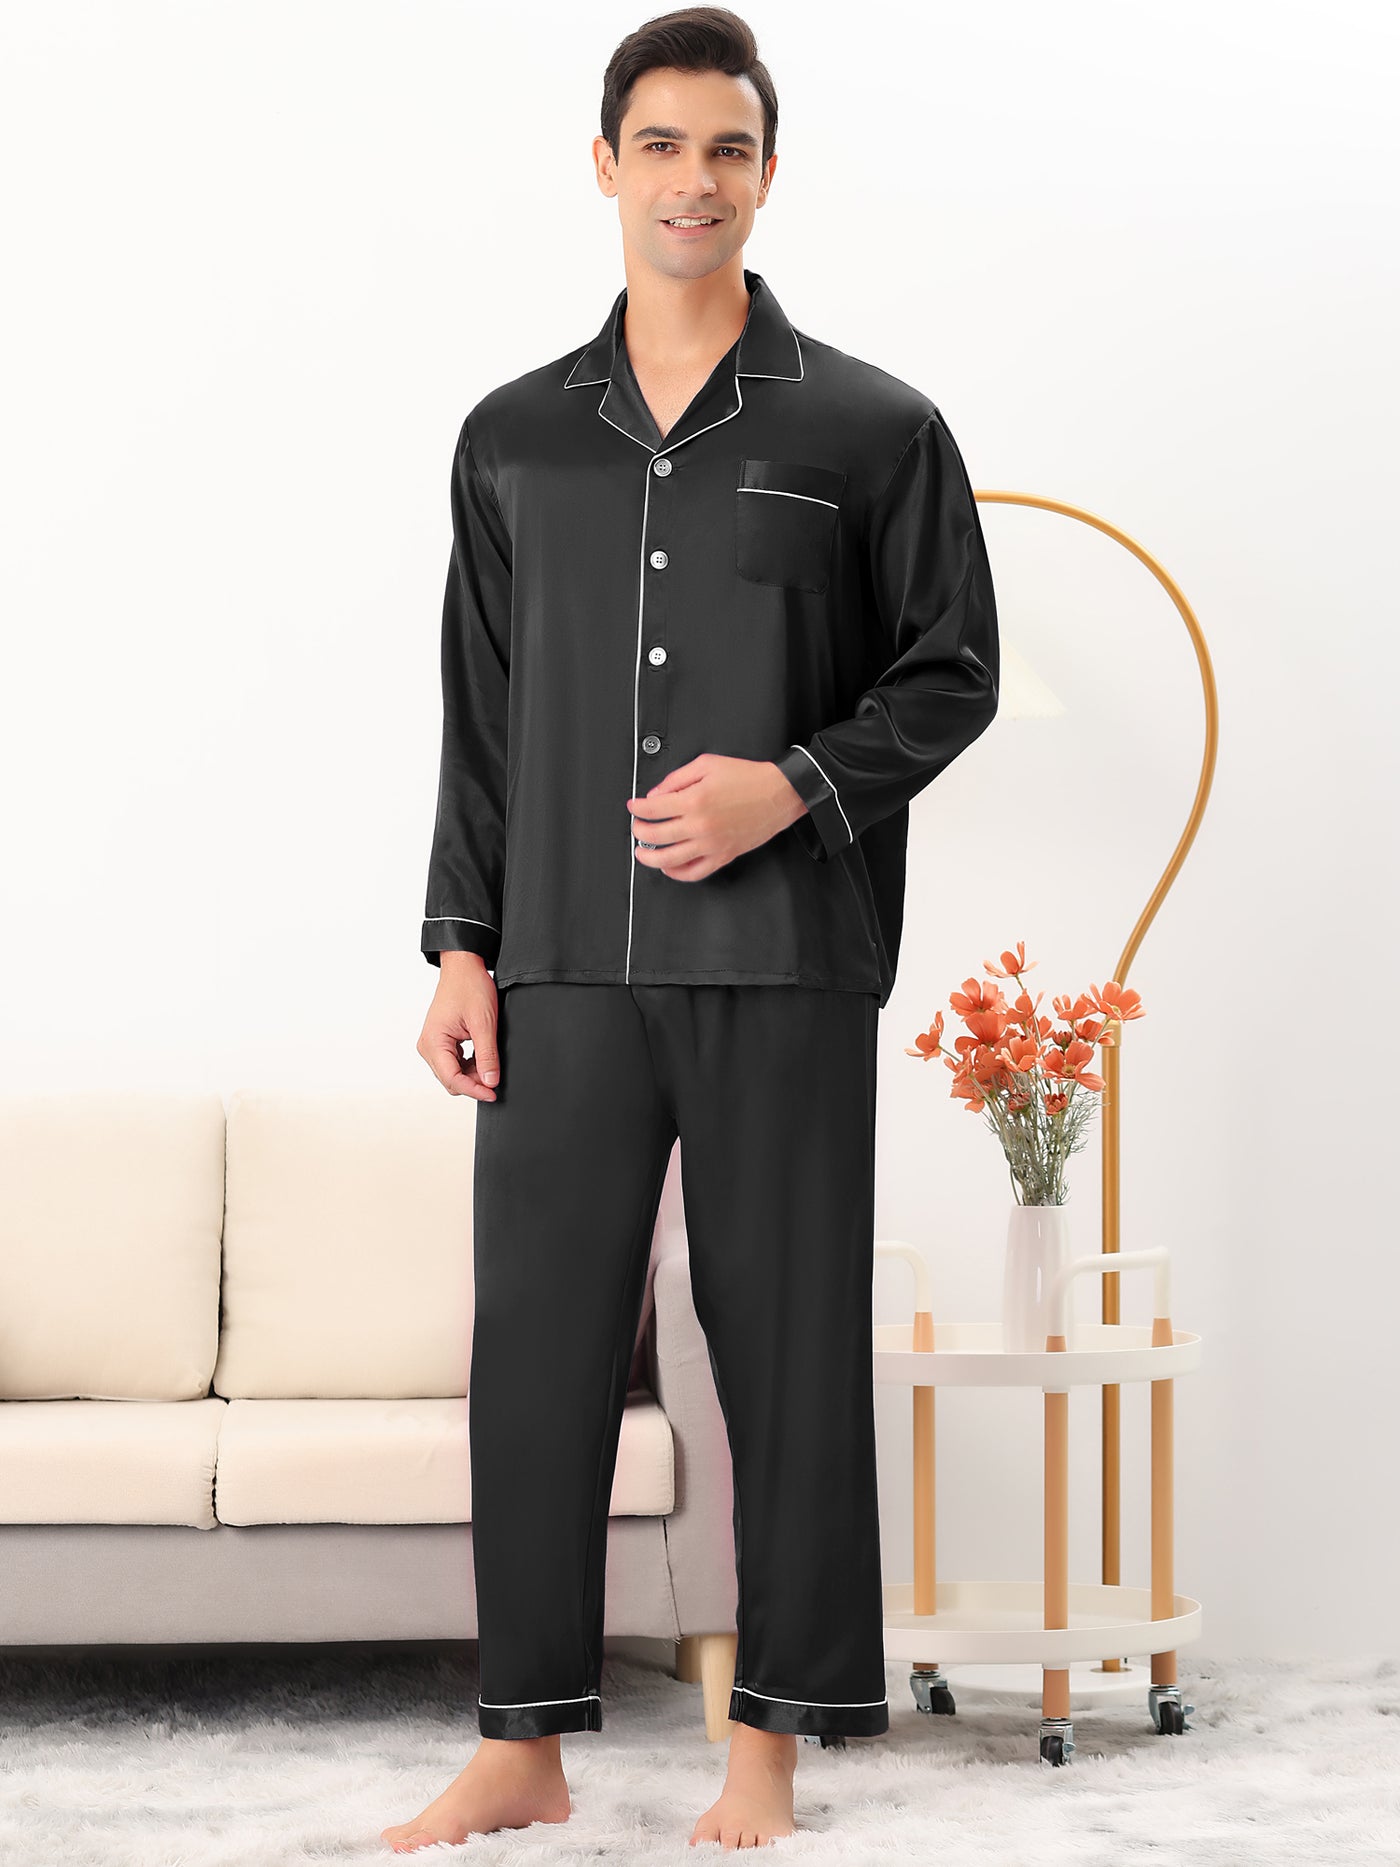 Bublédon Men's Satin Pajama Set Long Sleeves Shirt Pants Sleepwear Loungewear Pjs